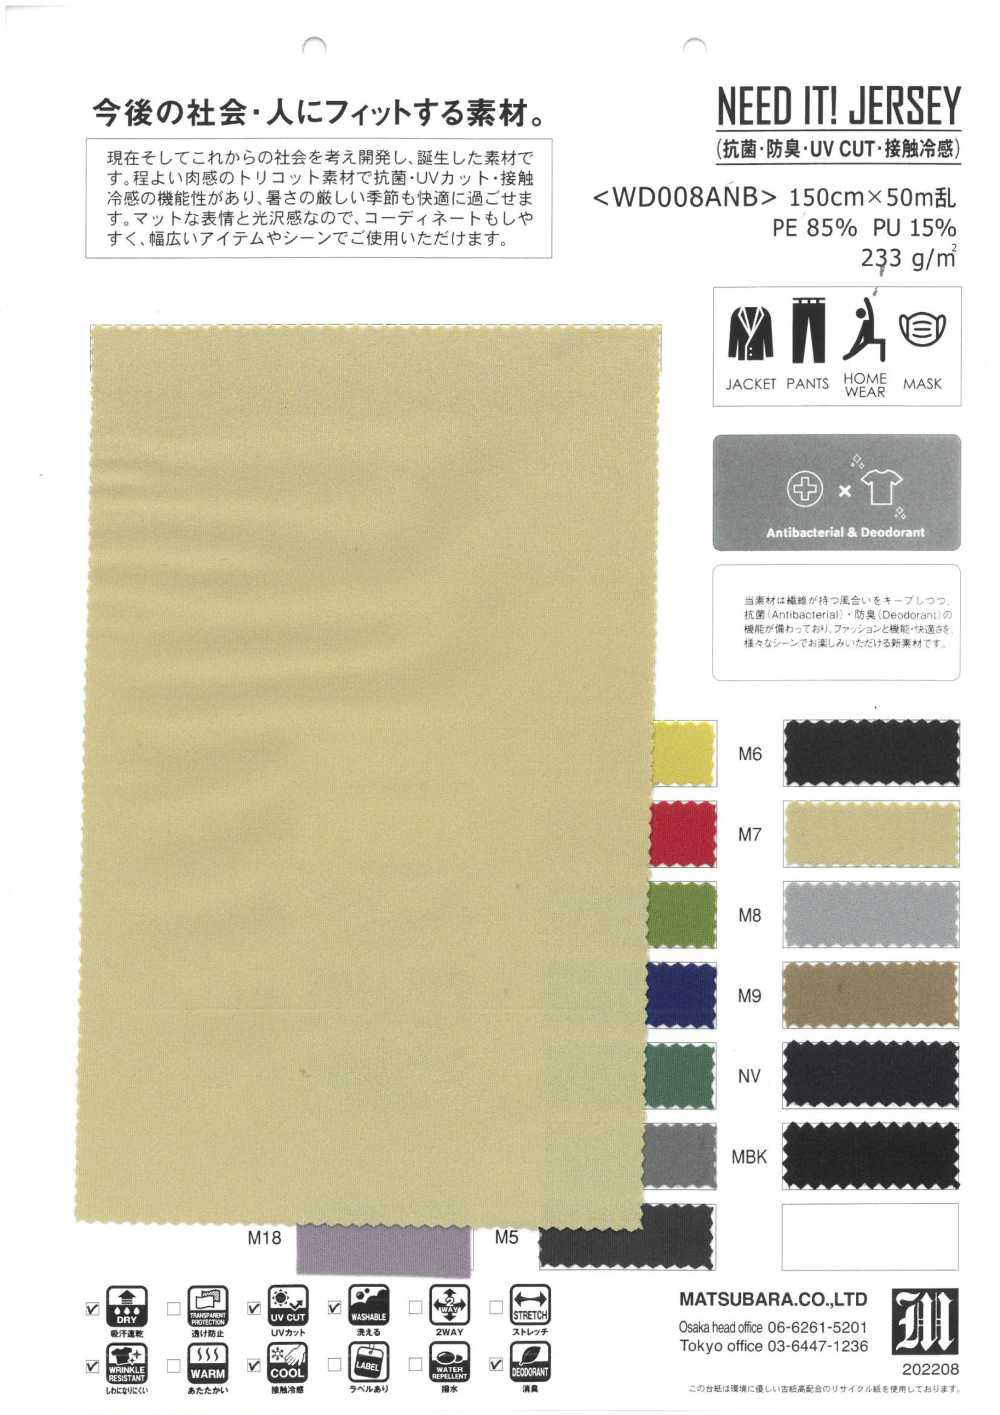 WD008ANB PRECISO DISSO! JERSEY (Antibacteriano, Desodorante, UV CUT Cool To The Touch)[Têxtil / Tecido] Matsubara